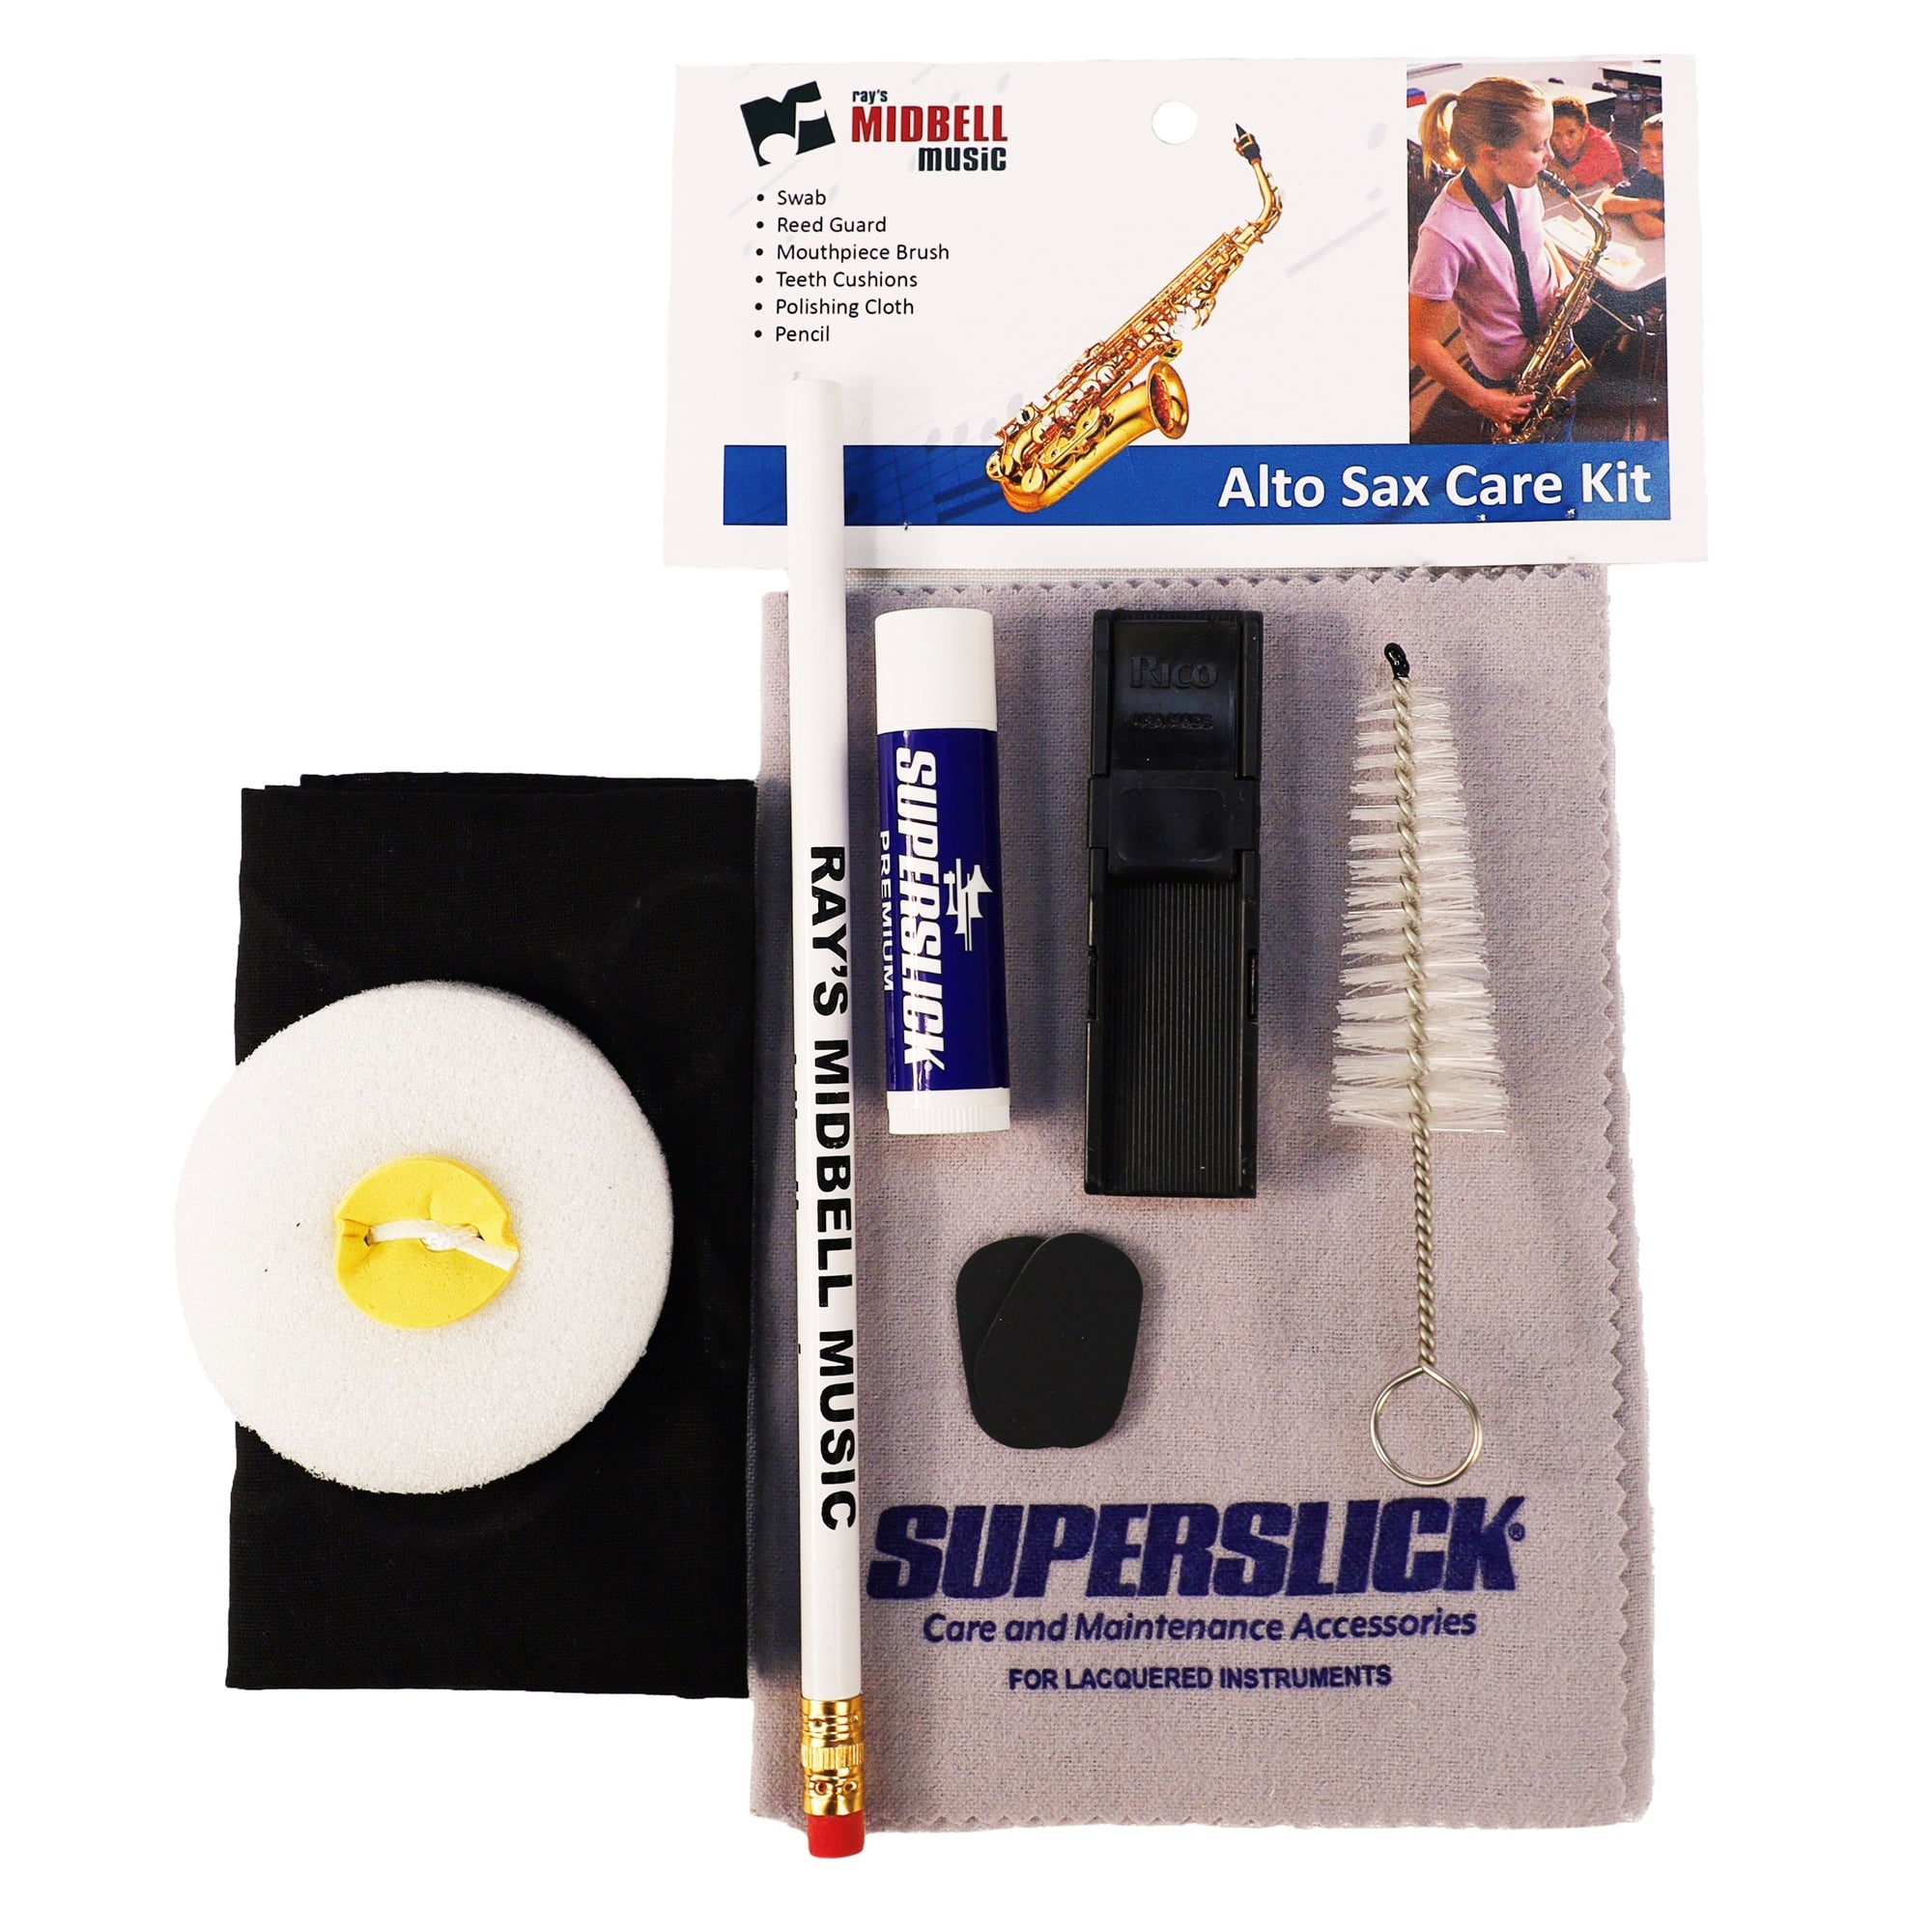 MIDBELL IASCK Alto Saxophone Care Kit